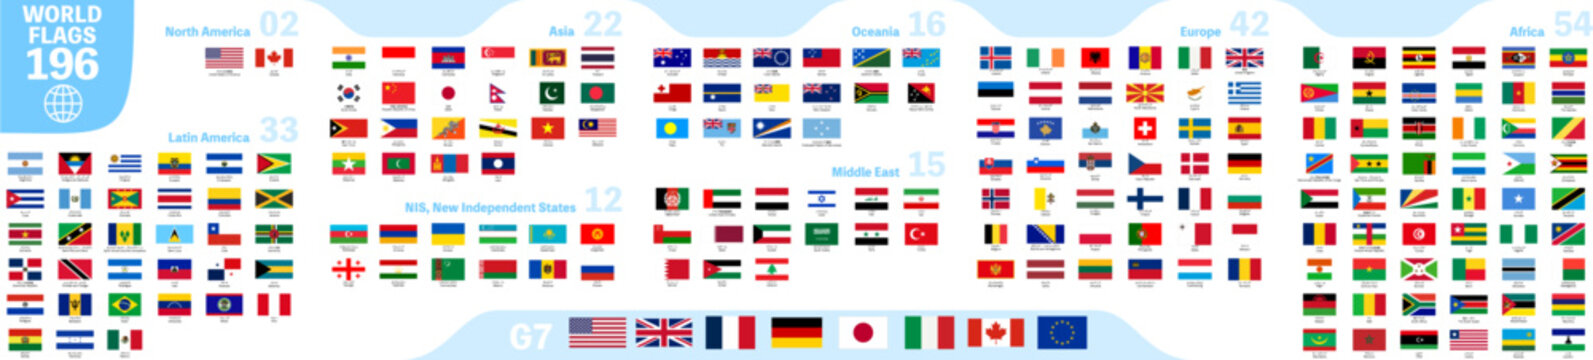 世界の国旗（地域別）、196ヶ国セット